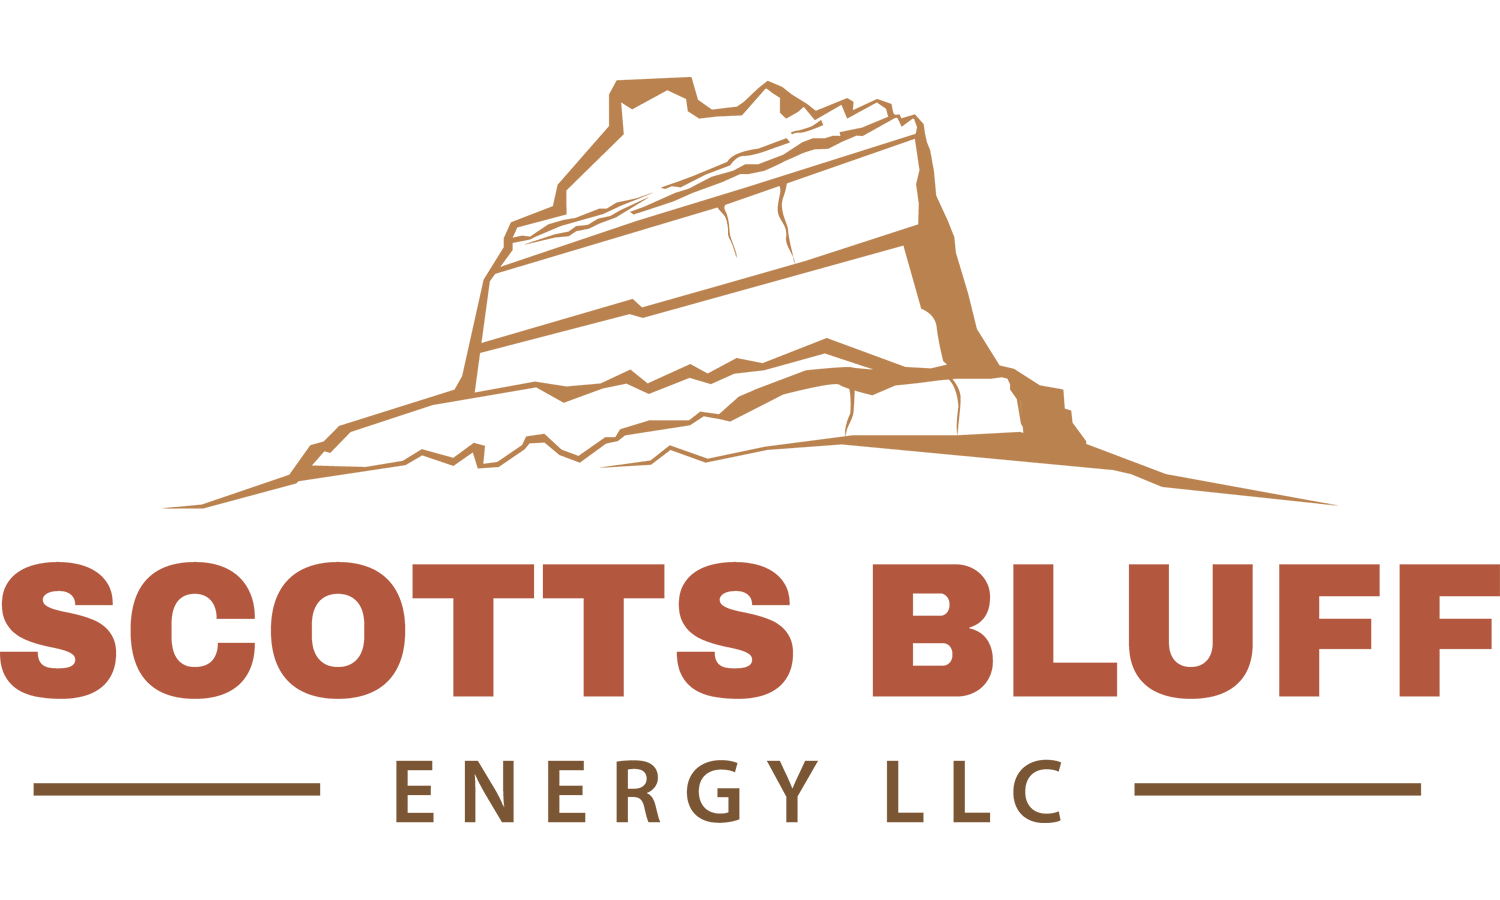 Scotts Bluff Energy LLC